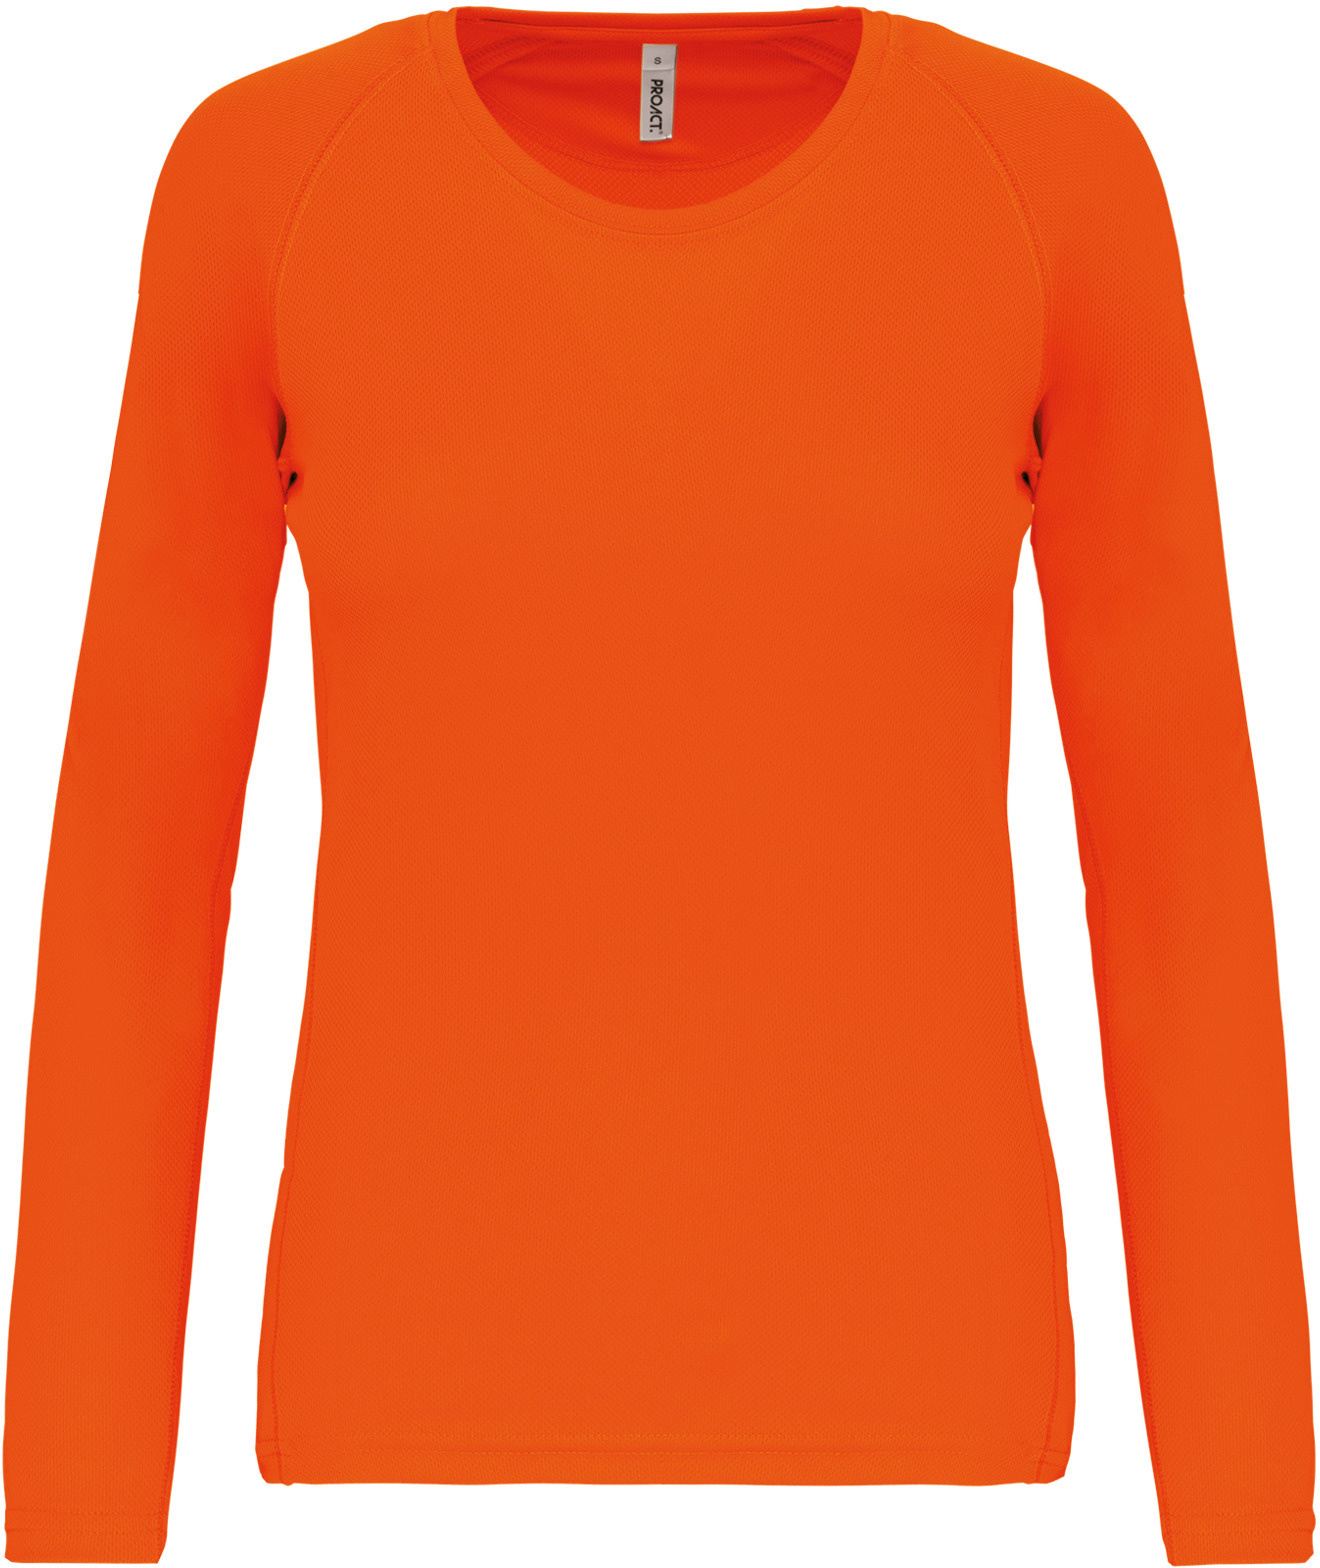 combineren baai Additief Dames sportshirt in 7 trendy kleuren